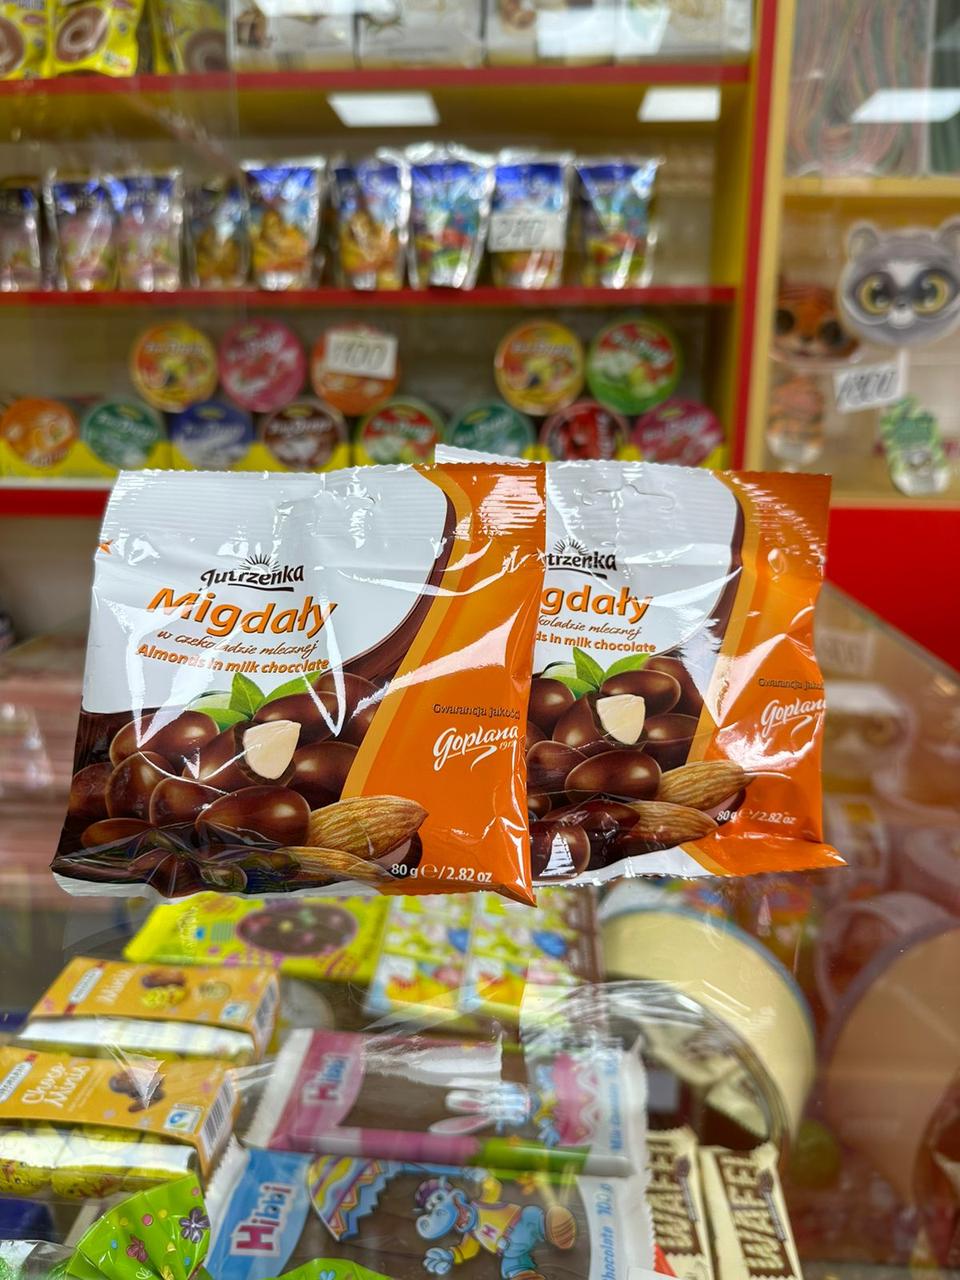 Орехи в шоколаде Migdaty  Juterzenka 80гр /Goplana/ ПОЛЬША